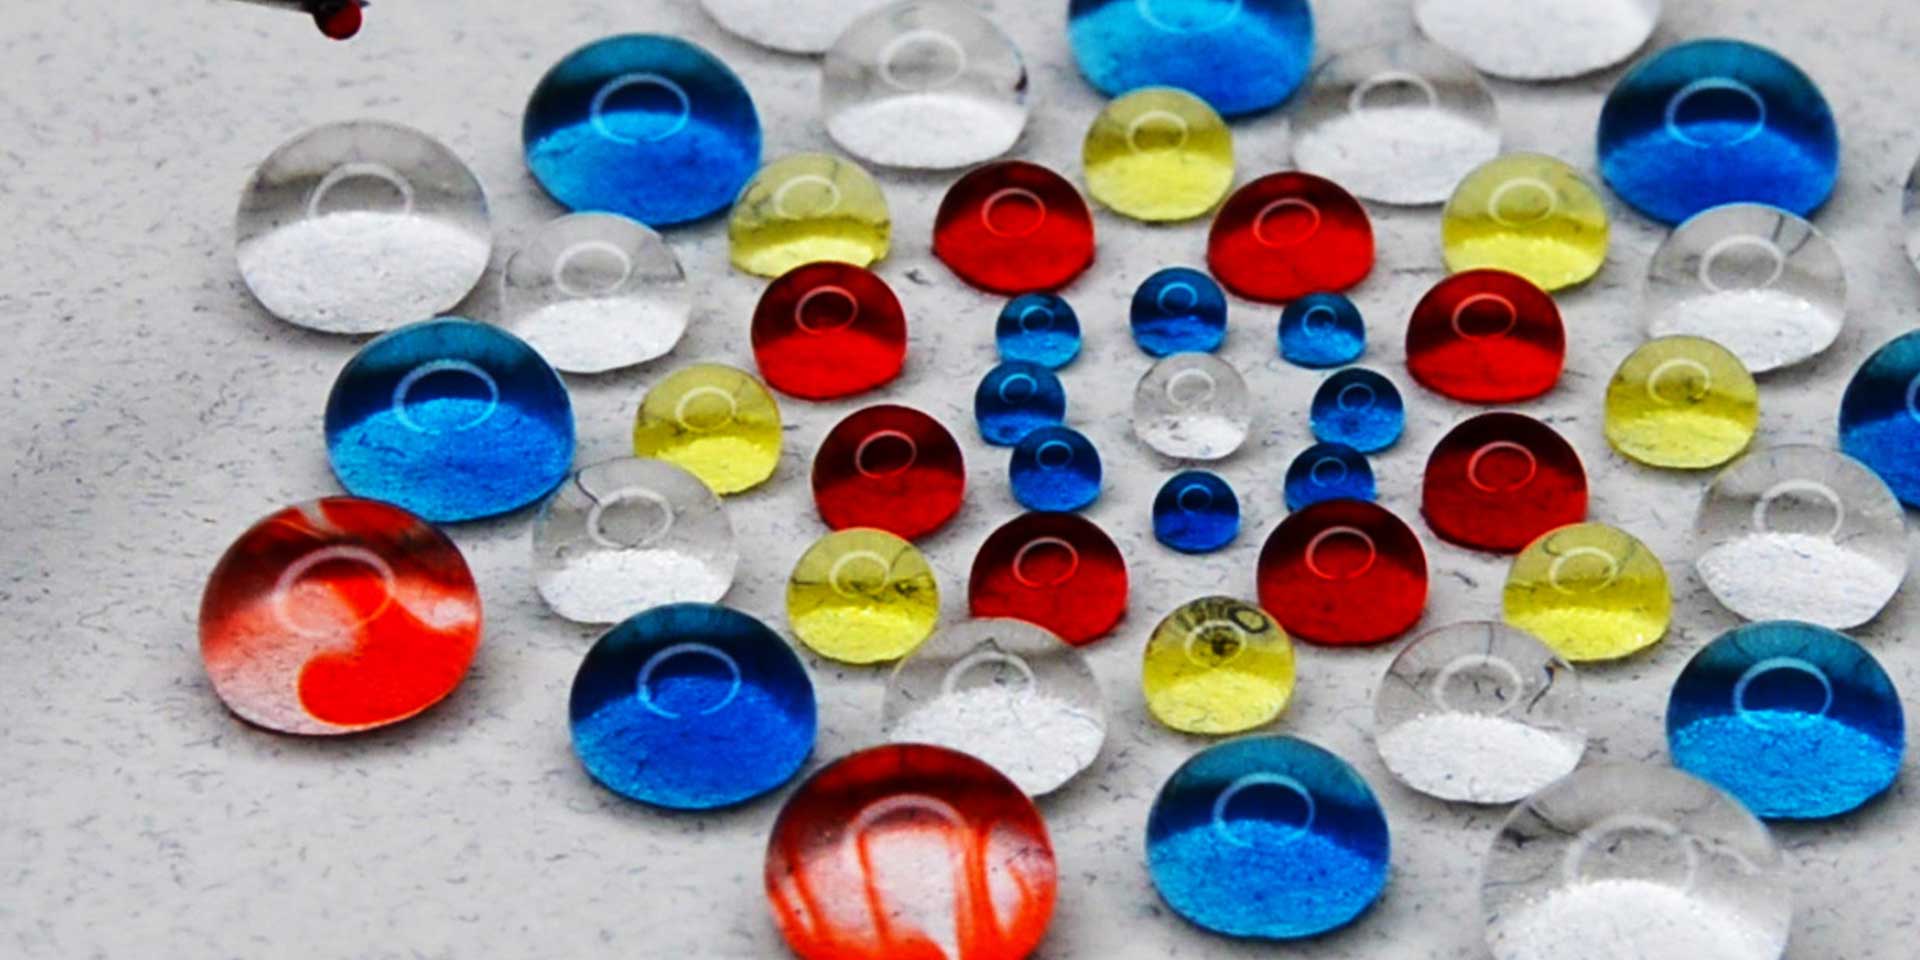 Mandala Artist Creates Water Droplet Art